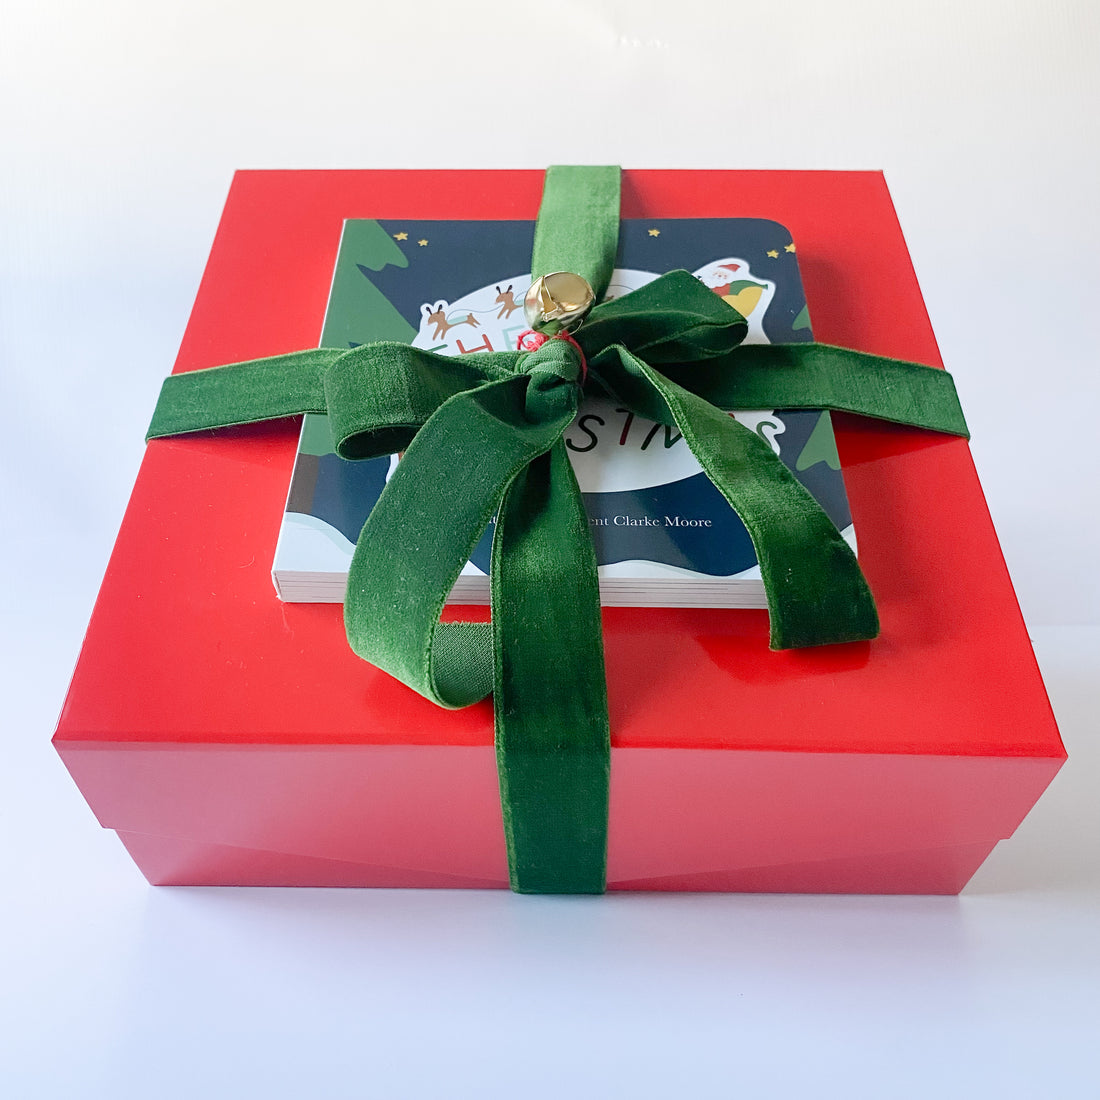 Box Cadeau - Produits dérivés/Divers - ludicity-boutique